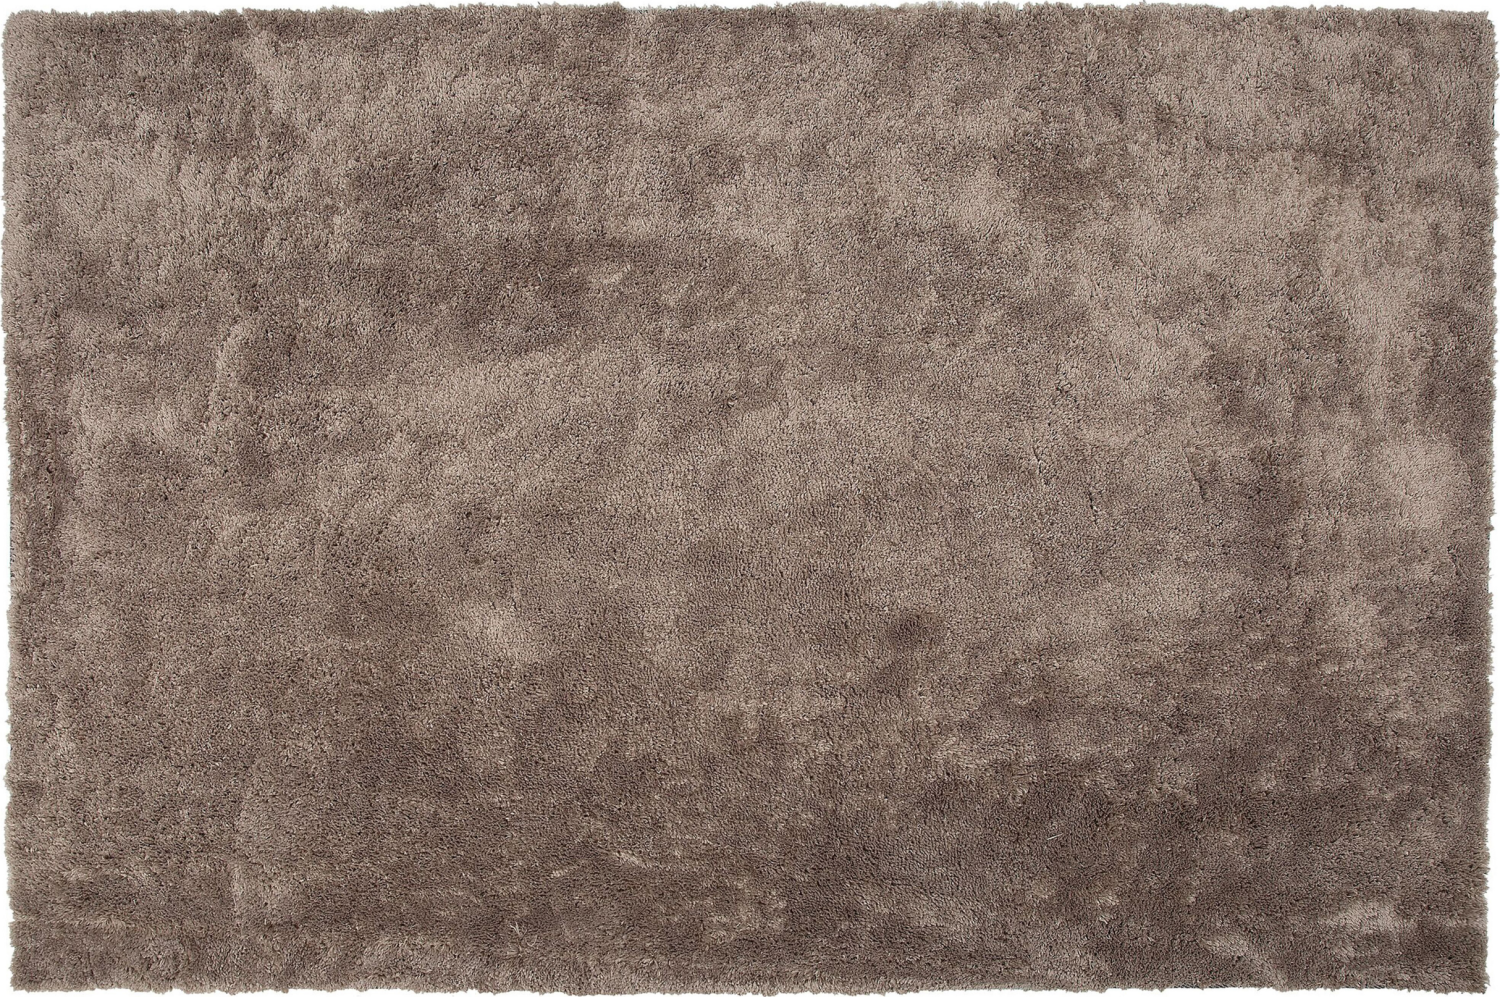 Teppich hellbraun 160 x 230 cm Shaggy EVREN Bild 1